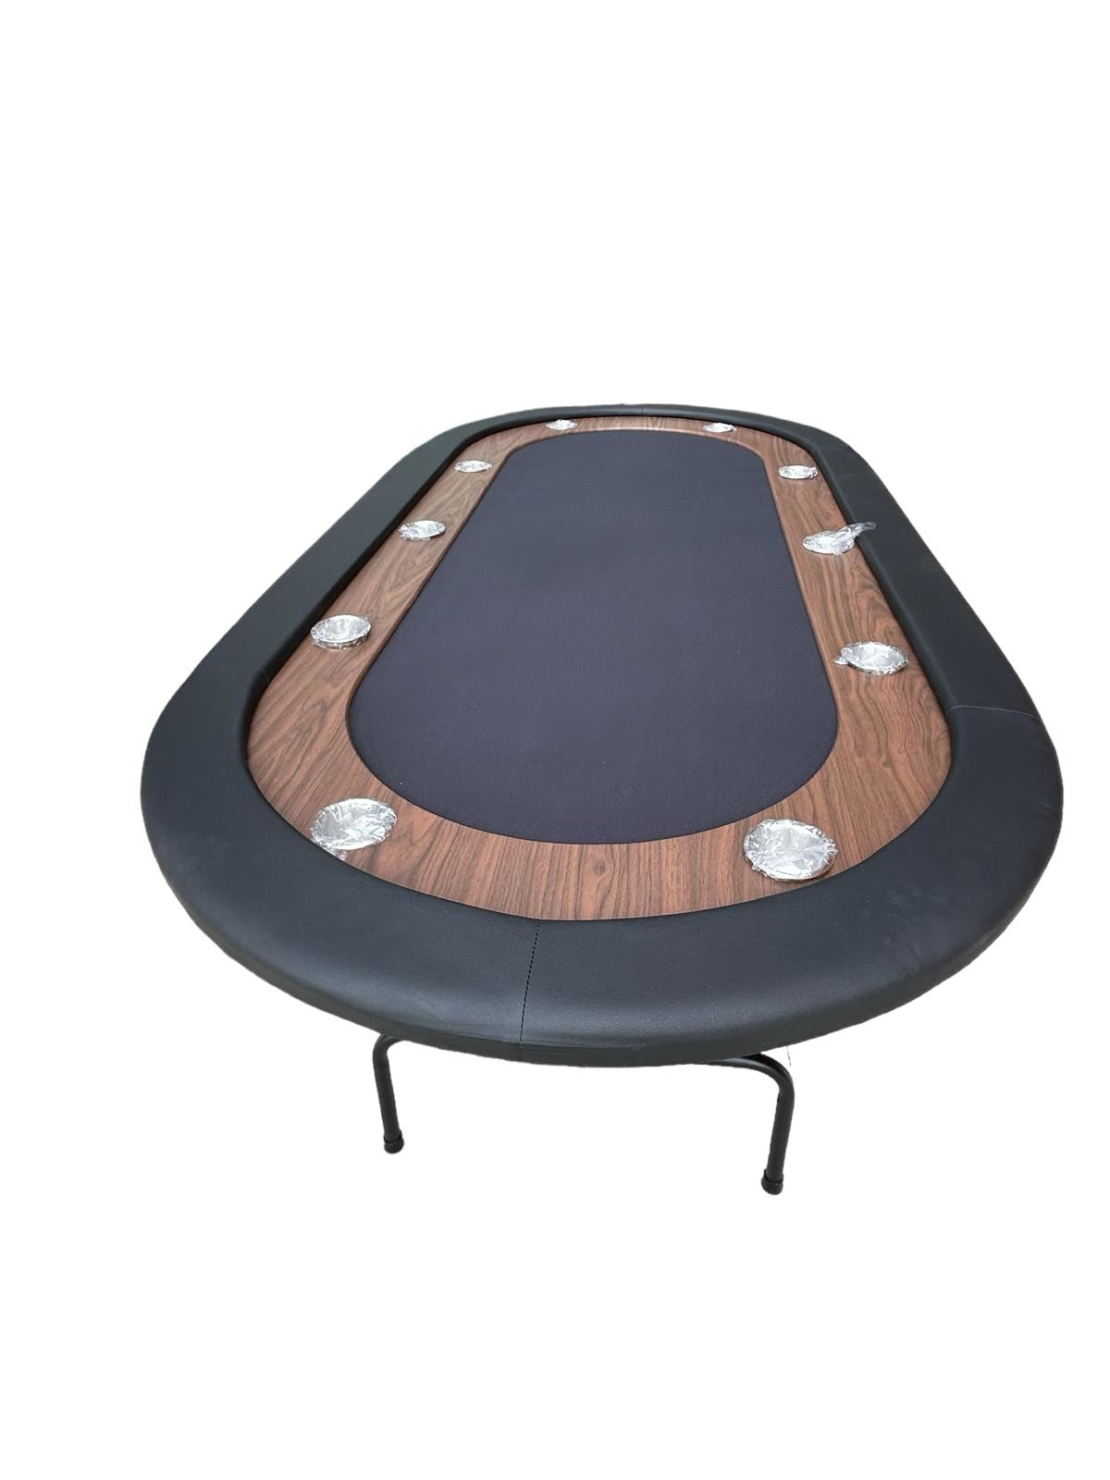 REGIIS שולחן קלפים שחור מתקפל מתאים ל 10 שחקנים כולל רגלי מתכת מתקפלות